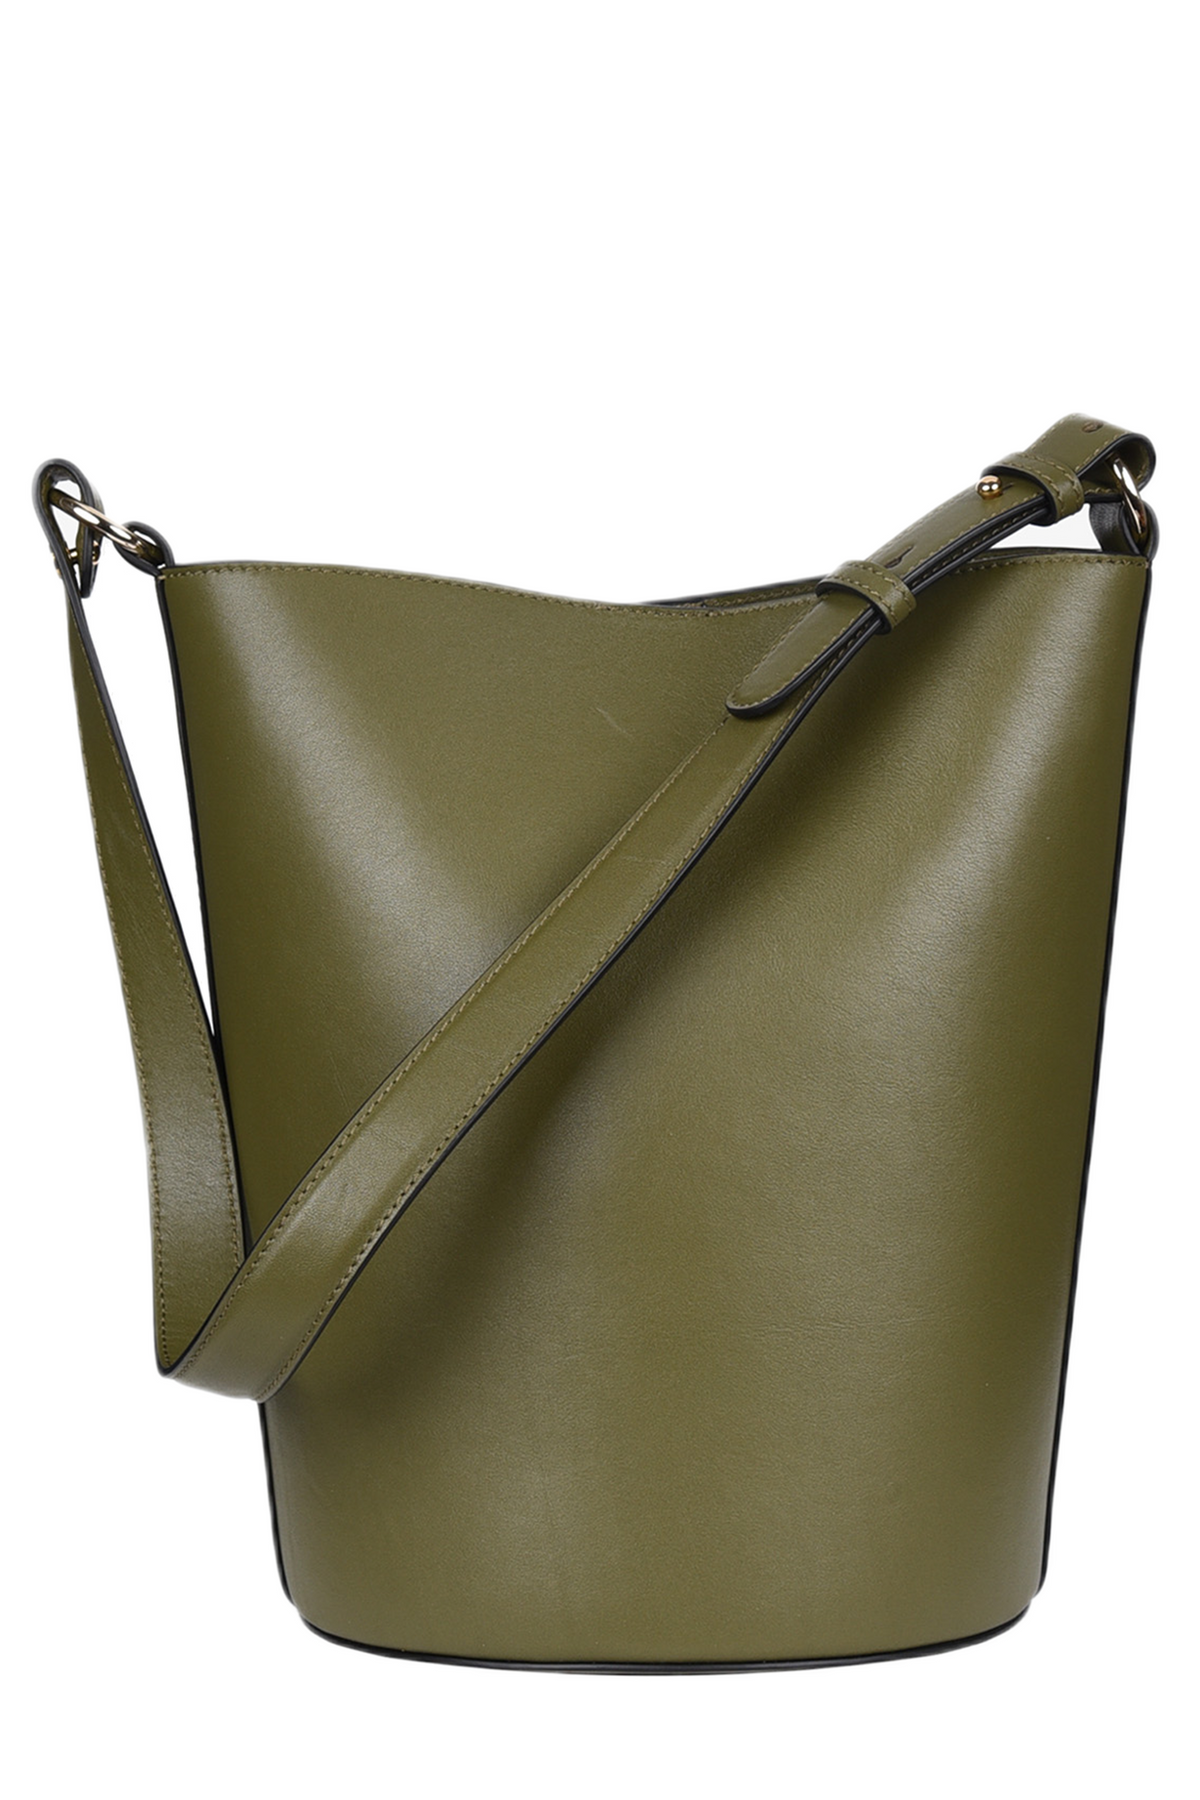 Hyer Goods Canvas Convertible Bucket Bag Linen